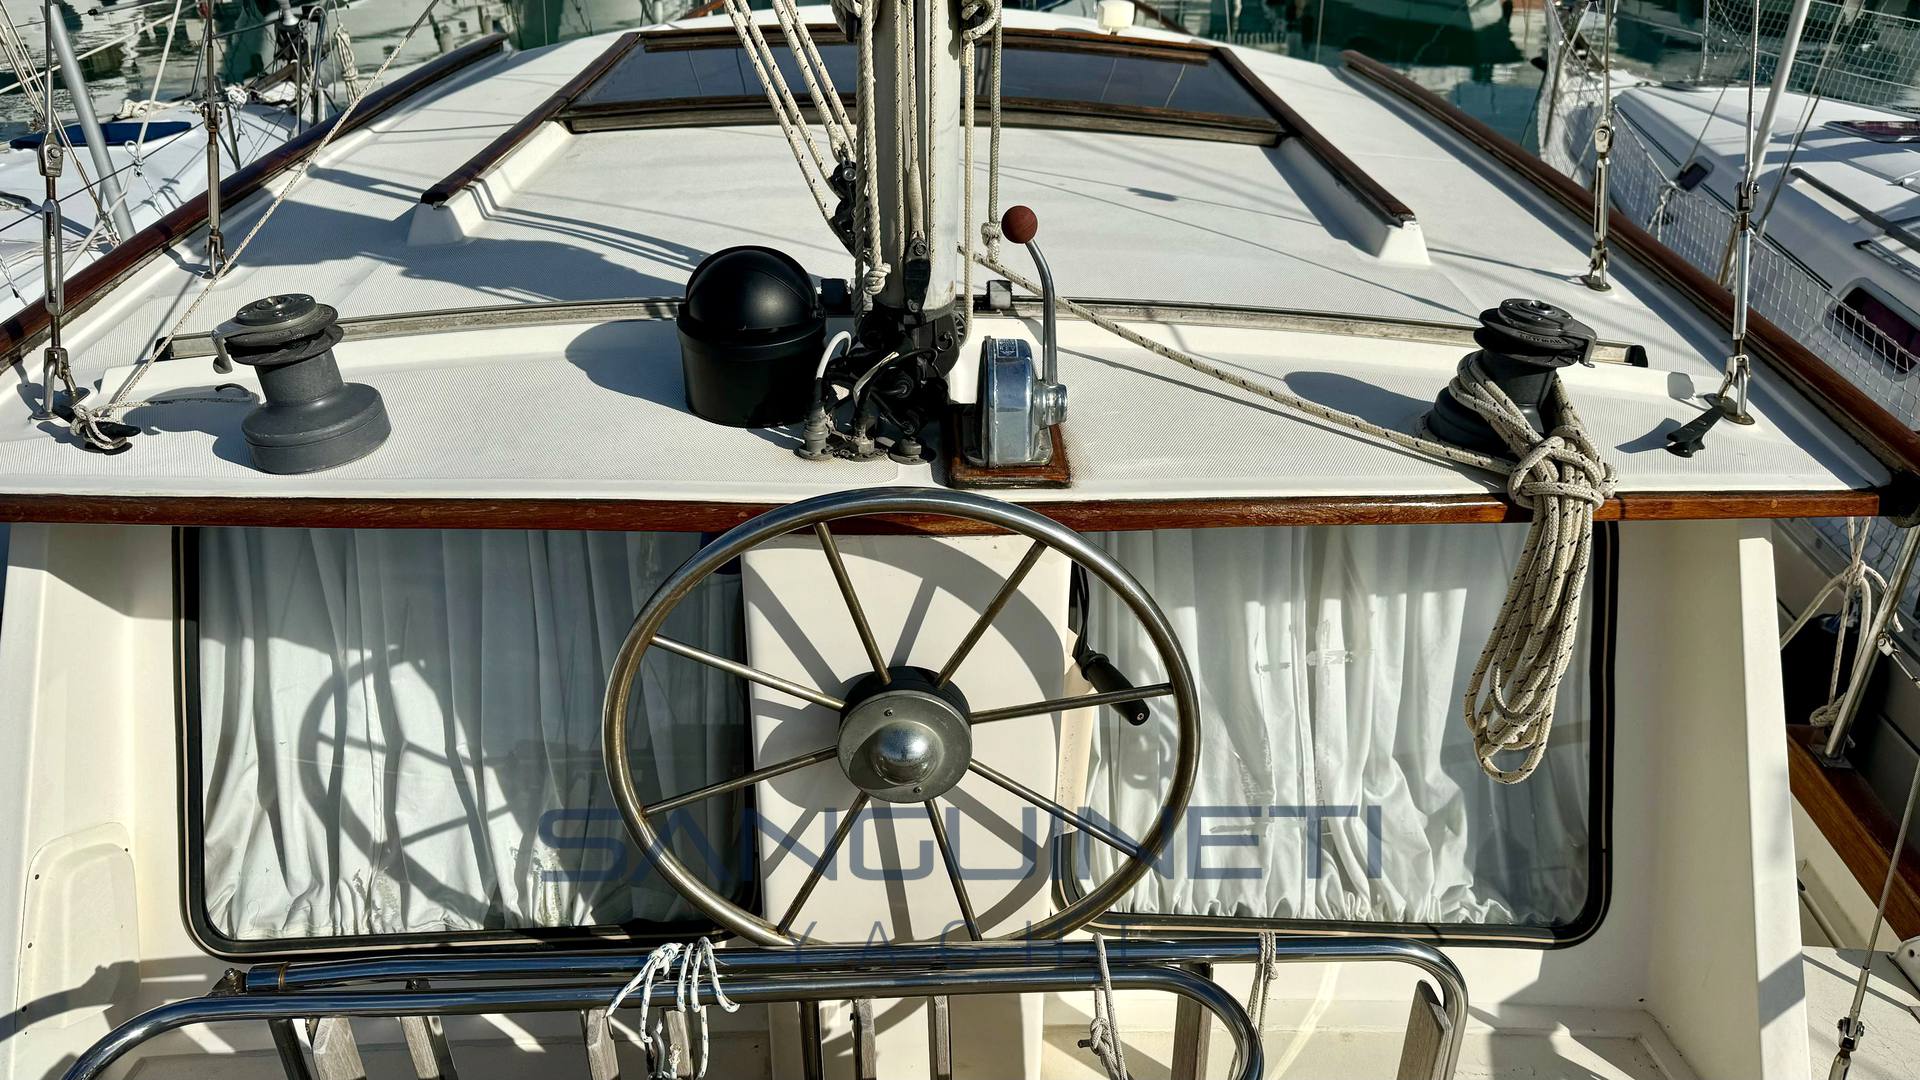 Syltala Nauticat 33 barco de motor